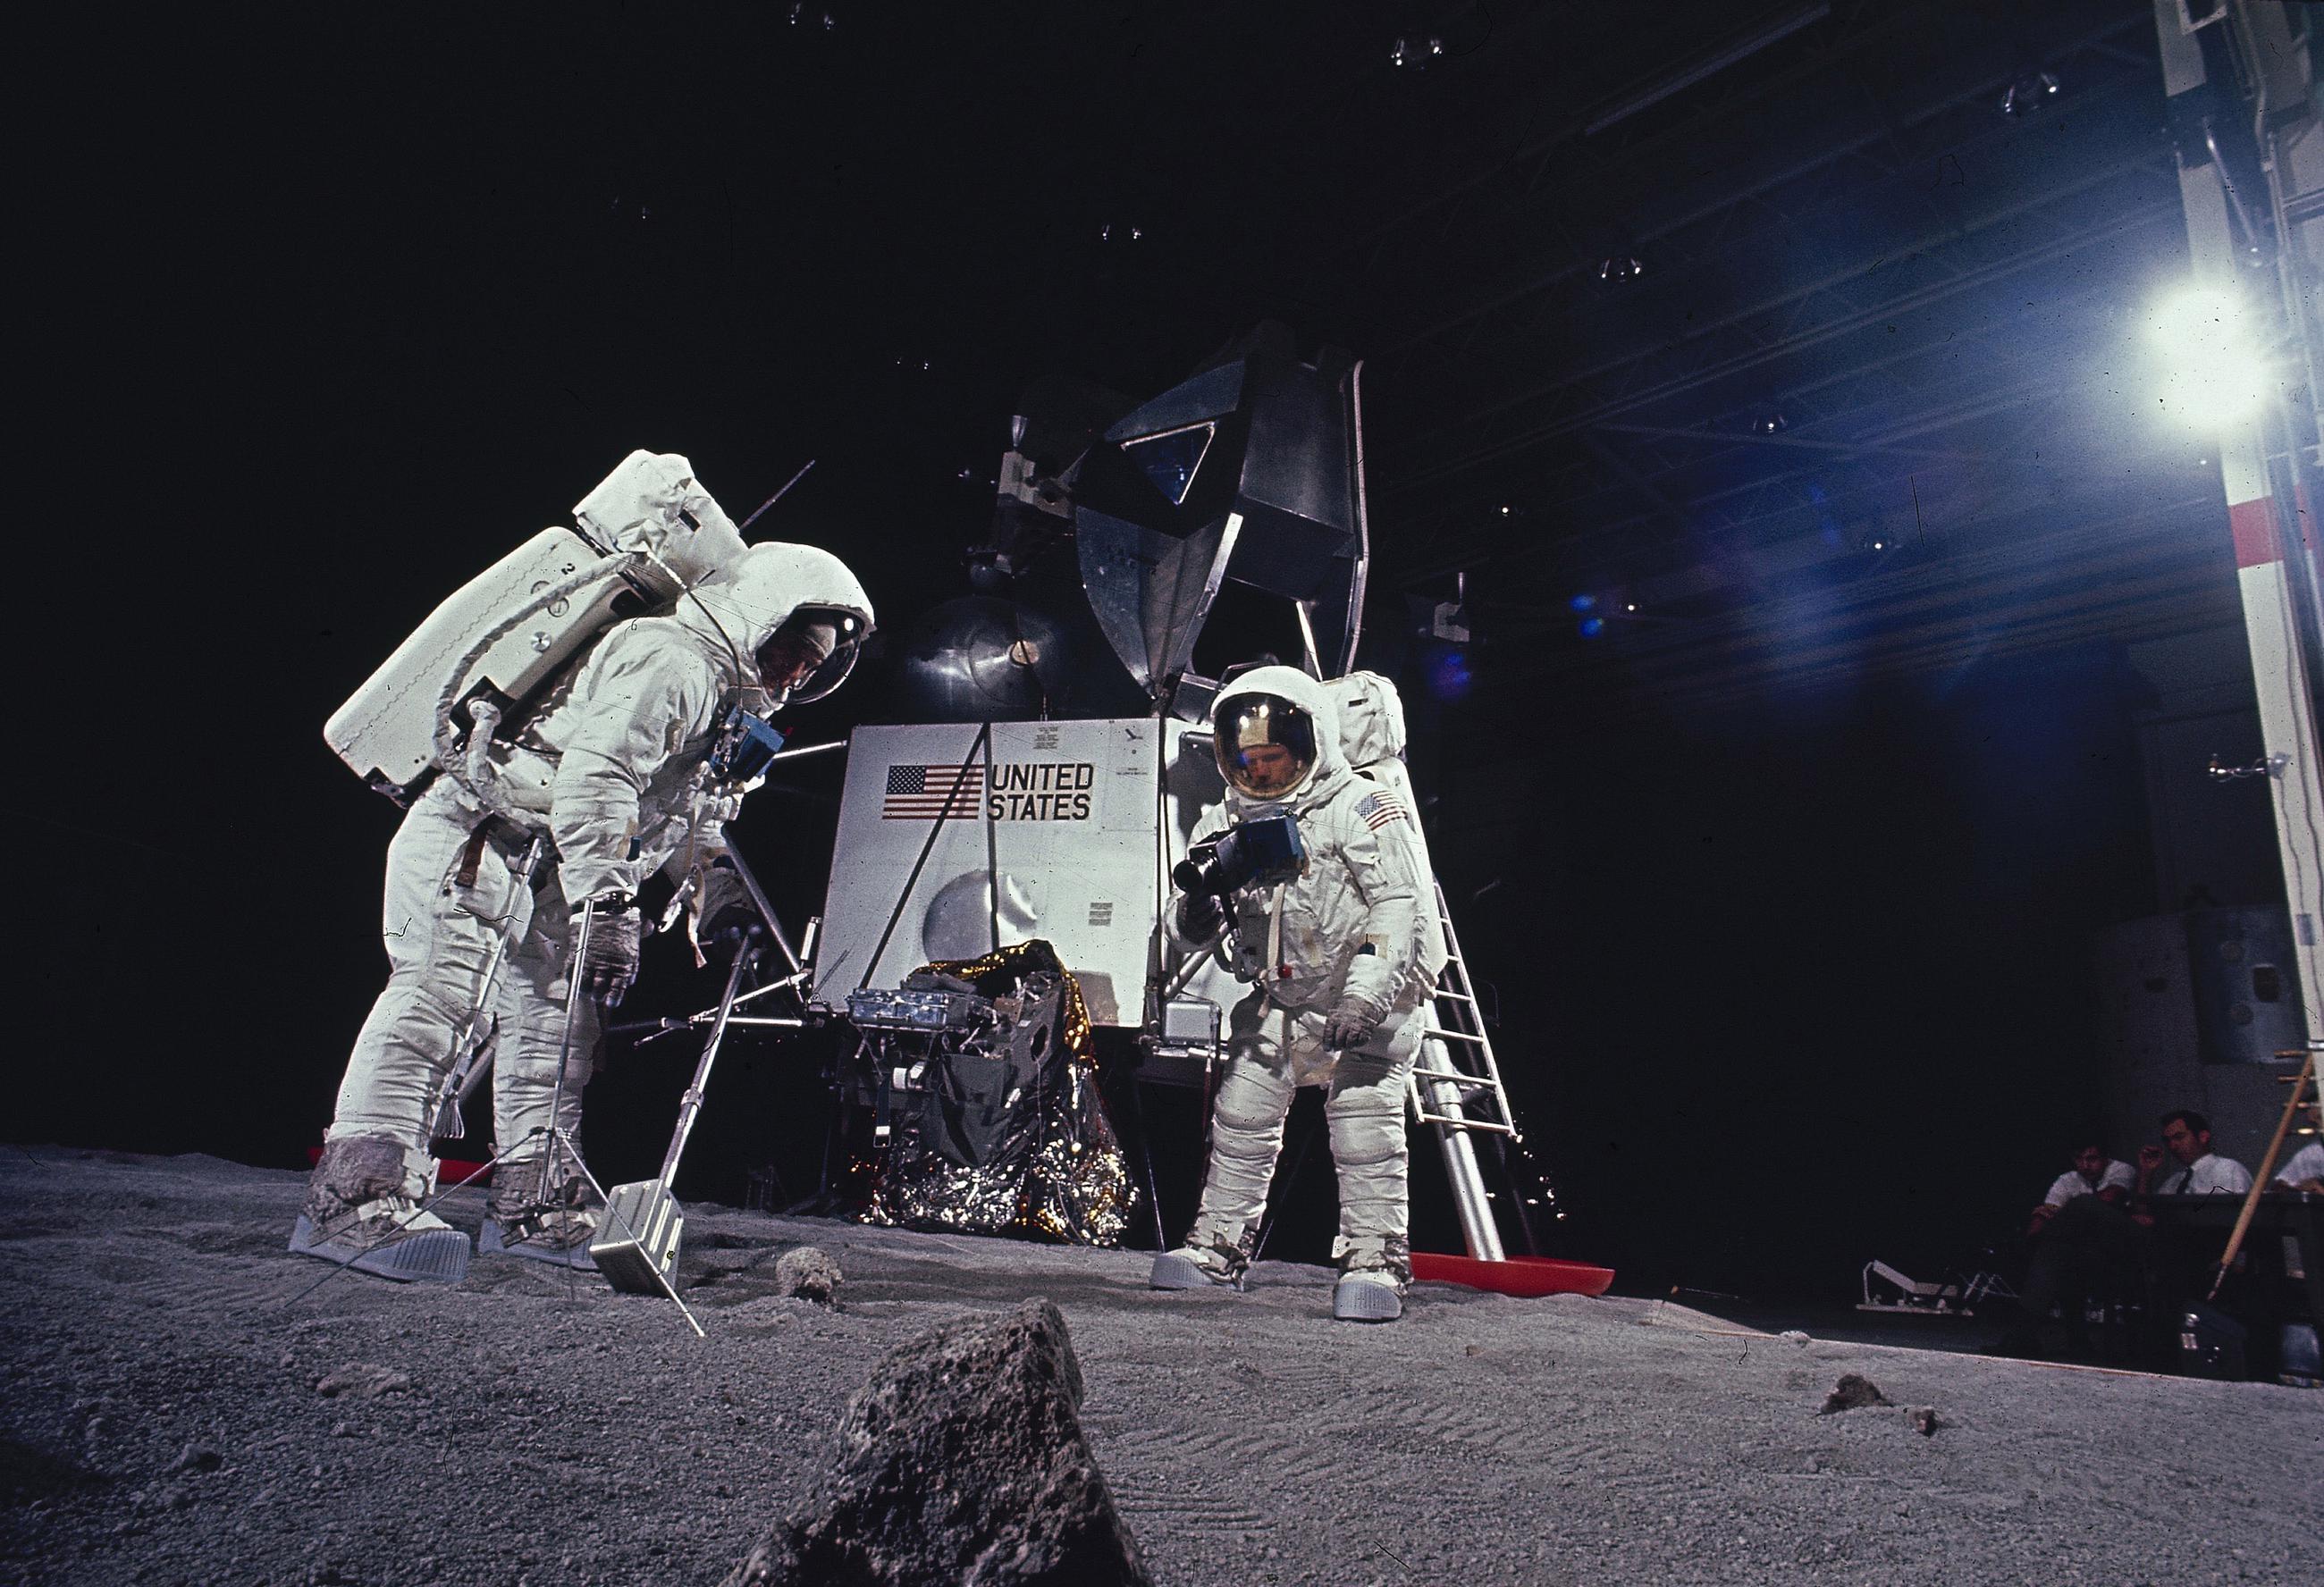 Американцы на луне. Нил Армстронг на Луне. Нил Армстронг полет на луну. Человек на Луне, Нил Армстронг, 1969. Космонавт Нил Армстронг на Луне.